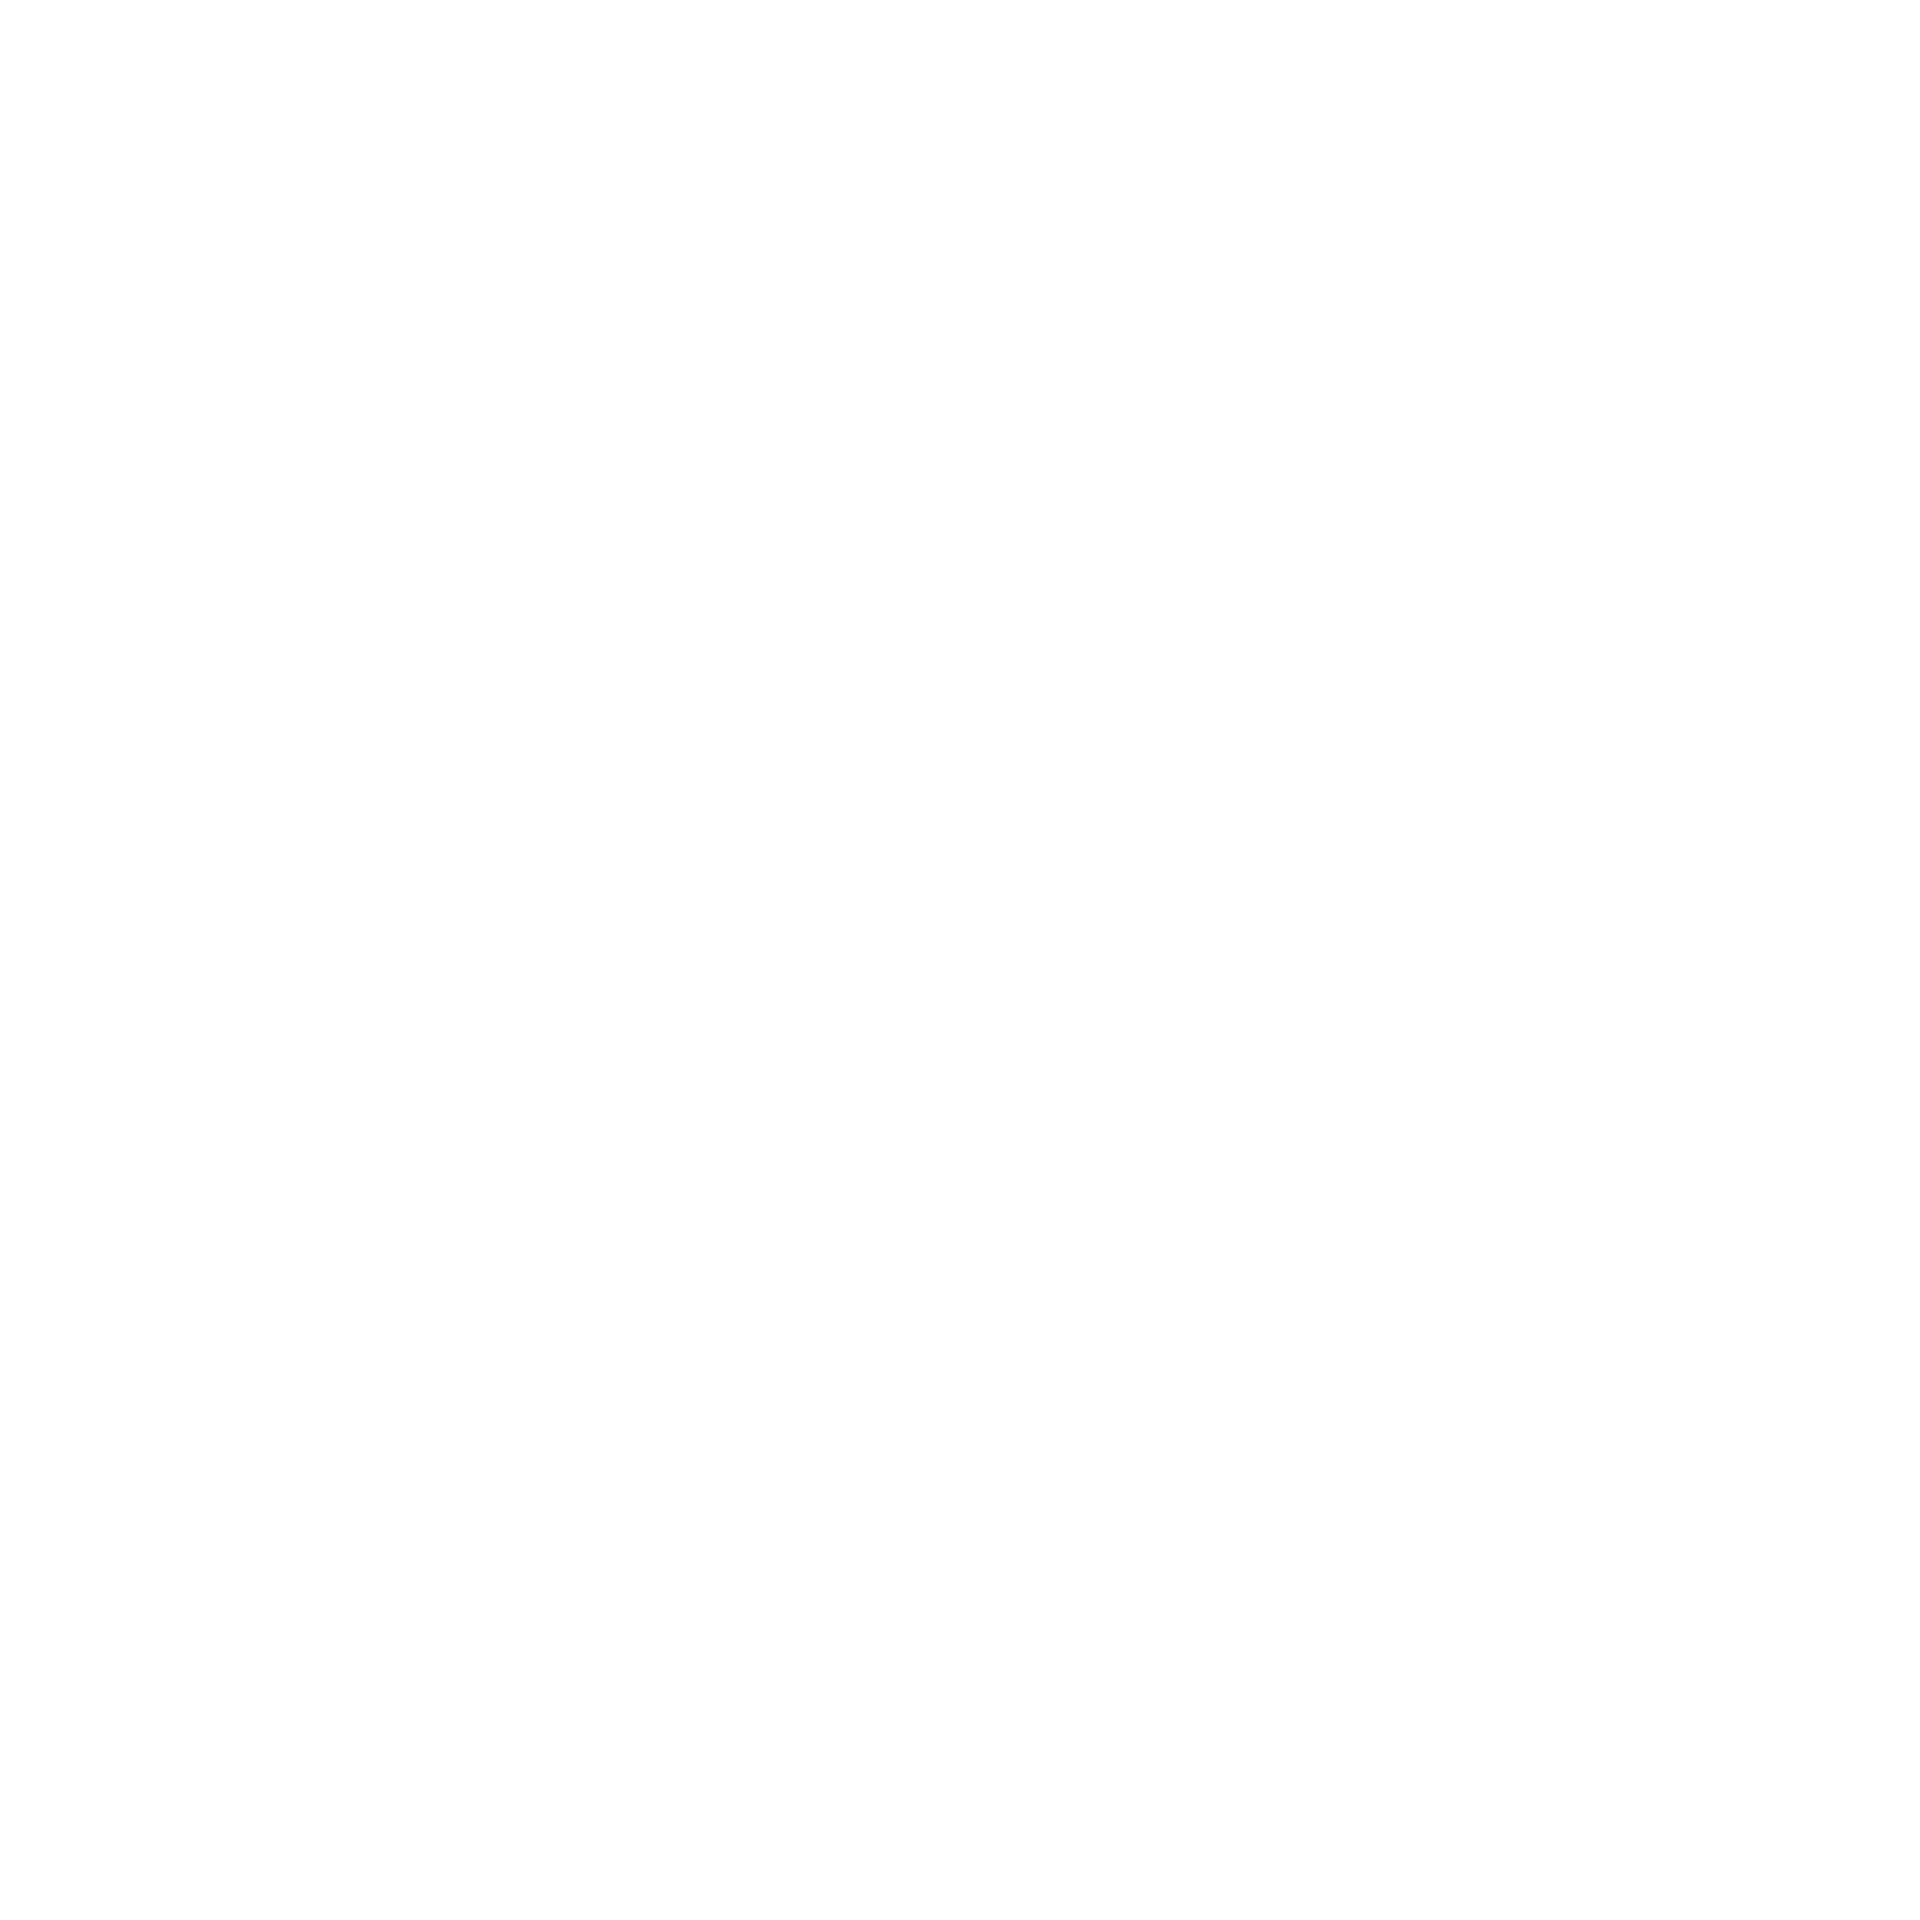 Cafe Santana Roasting CO